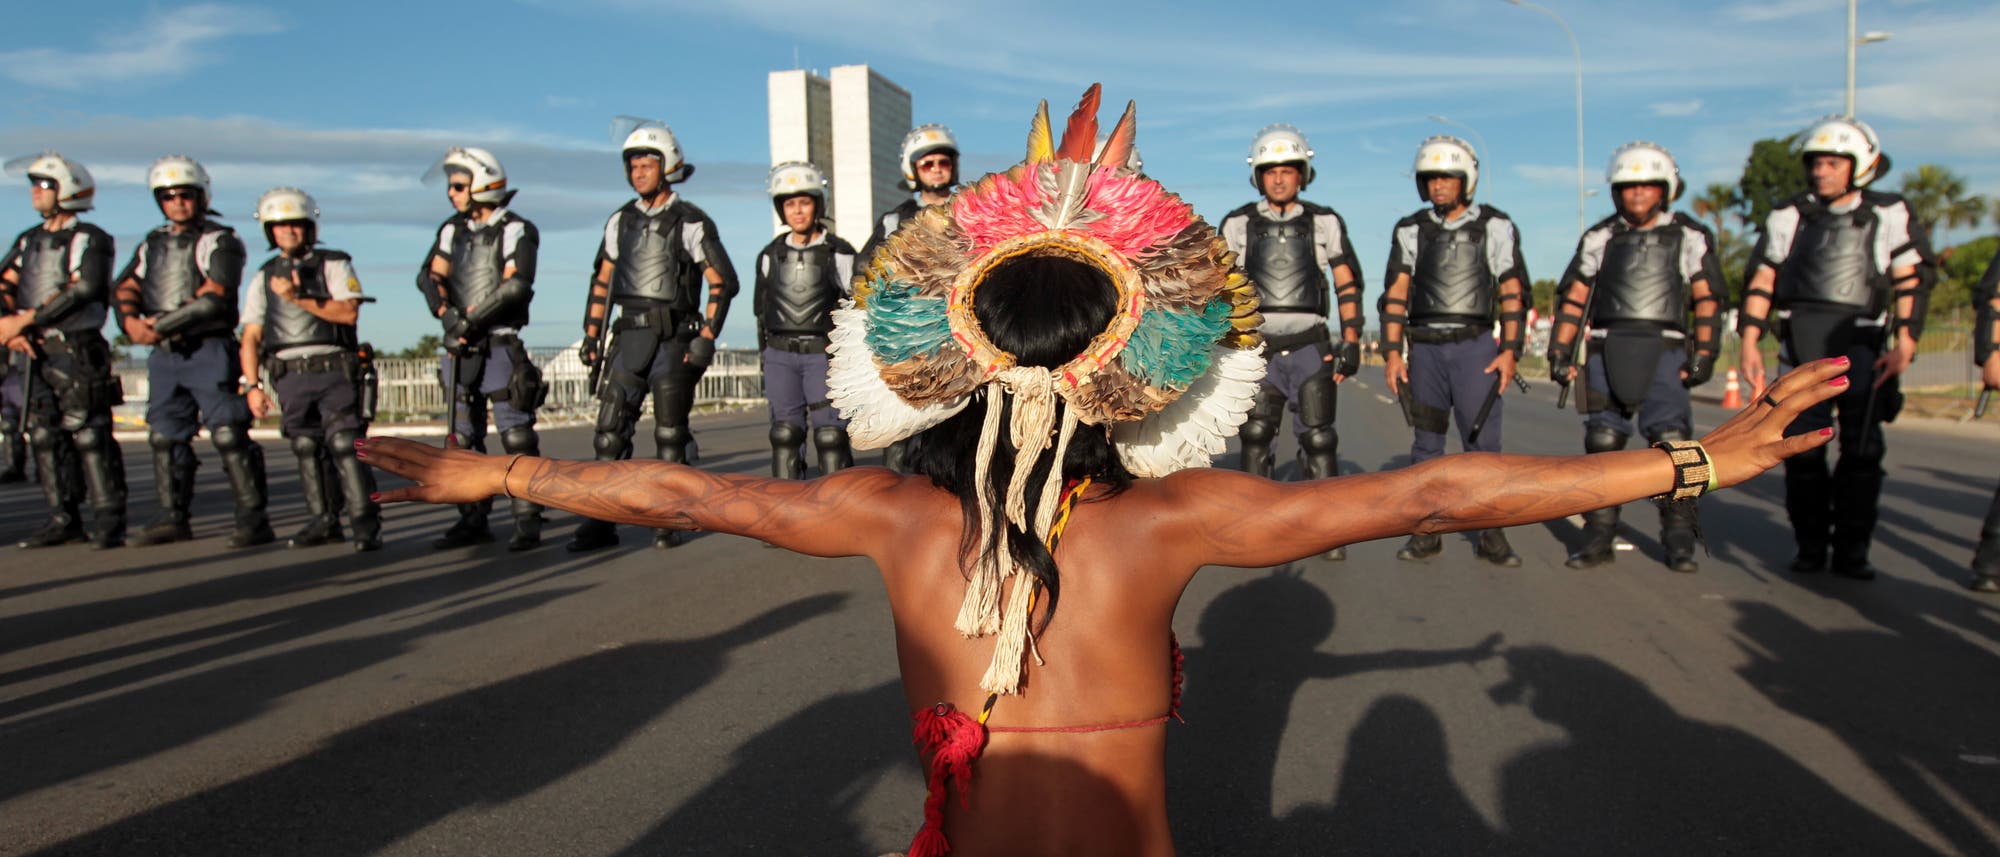 Immer weder protestieren Indigene in Brasilien für ihren besseren Schutz (Archivbild vom 17. April 2017))